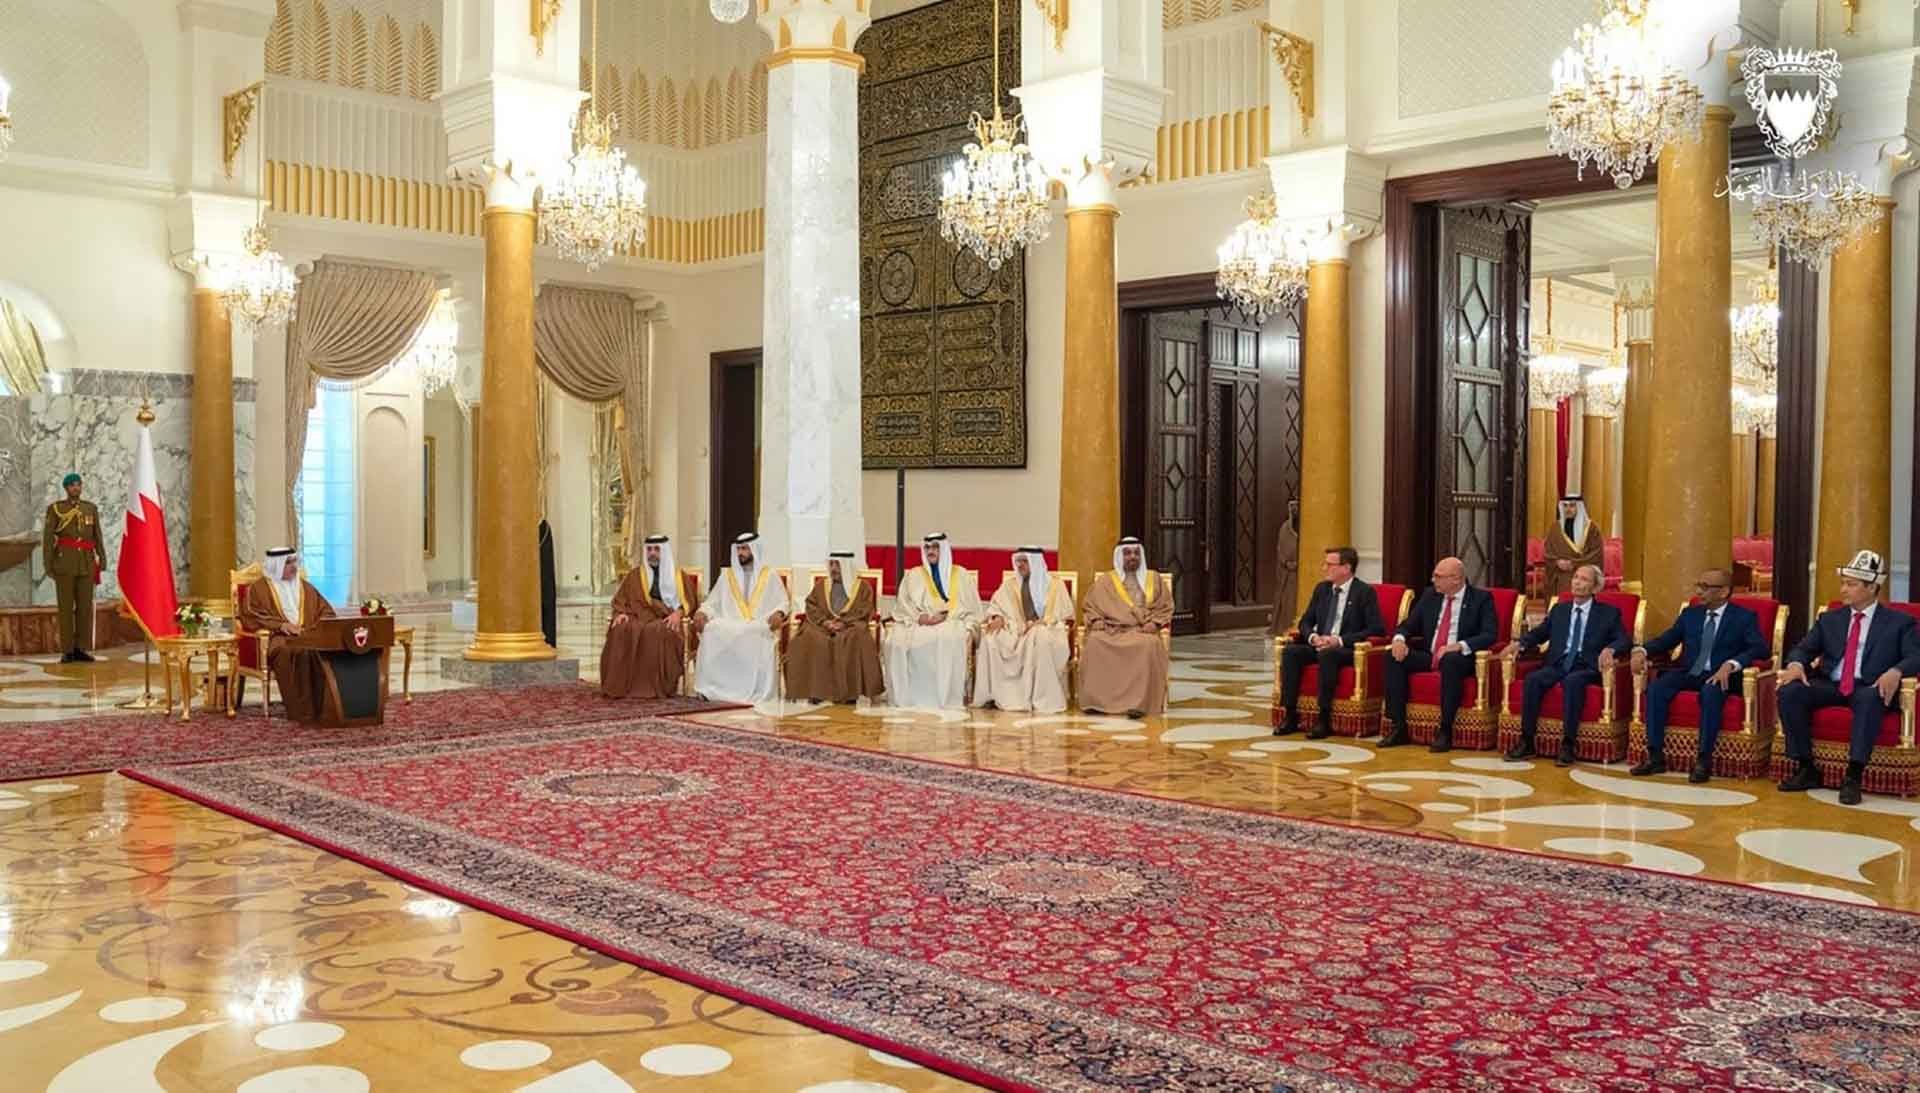 Đại sứ Đặng Xuân Dũng trình Thư ủy nhiệm lên Thái tử, Thủ tướng Bahrain Salman bin Hamad Al Khalifa.